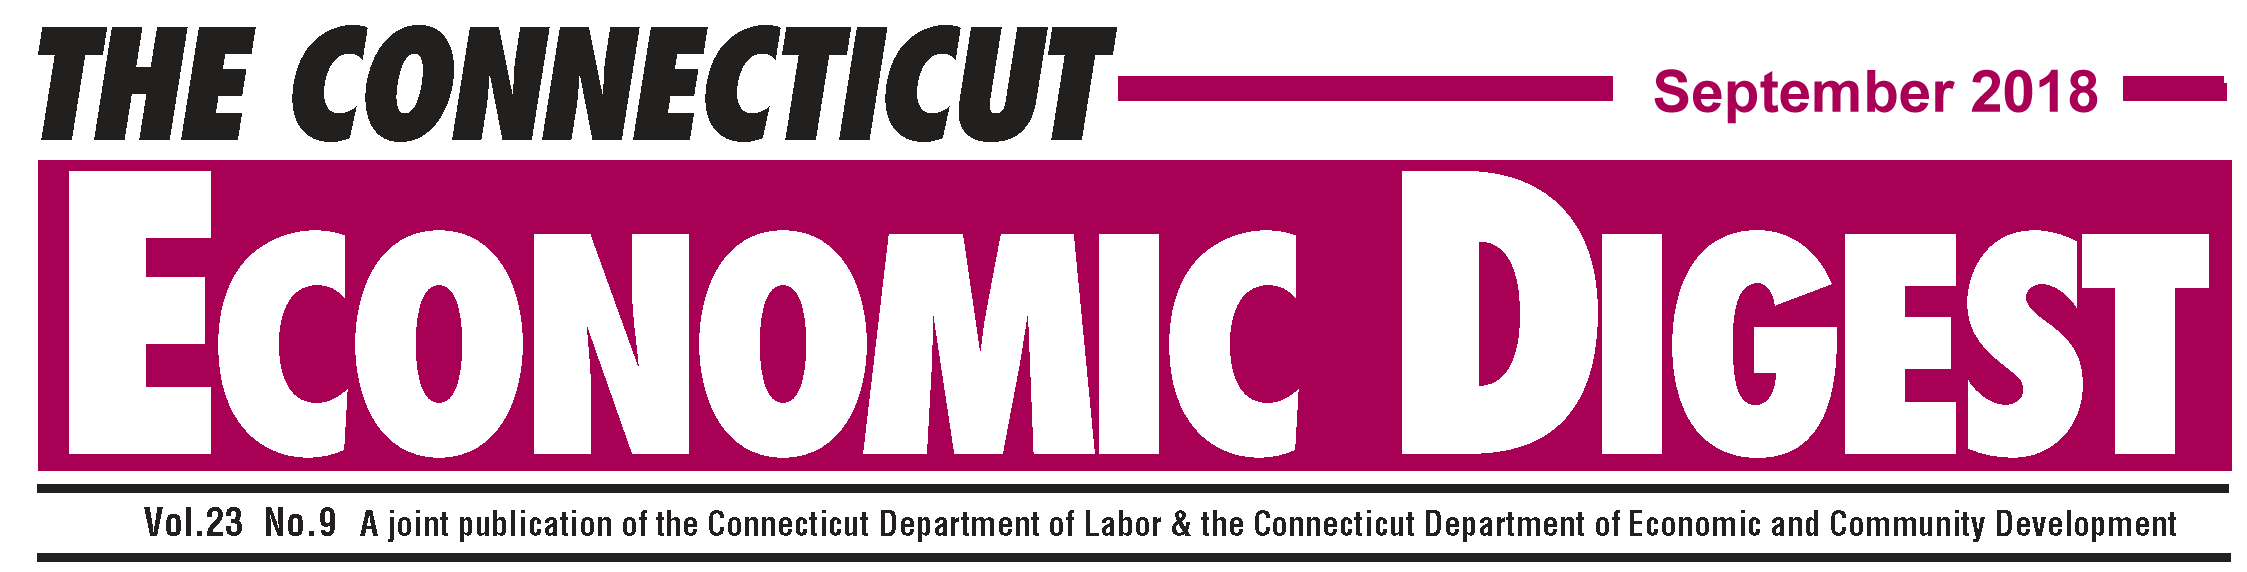 September 2018 Connecticut Economic Digest